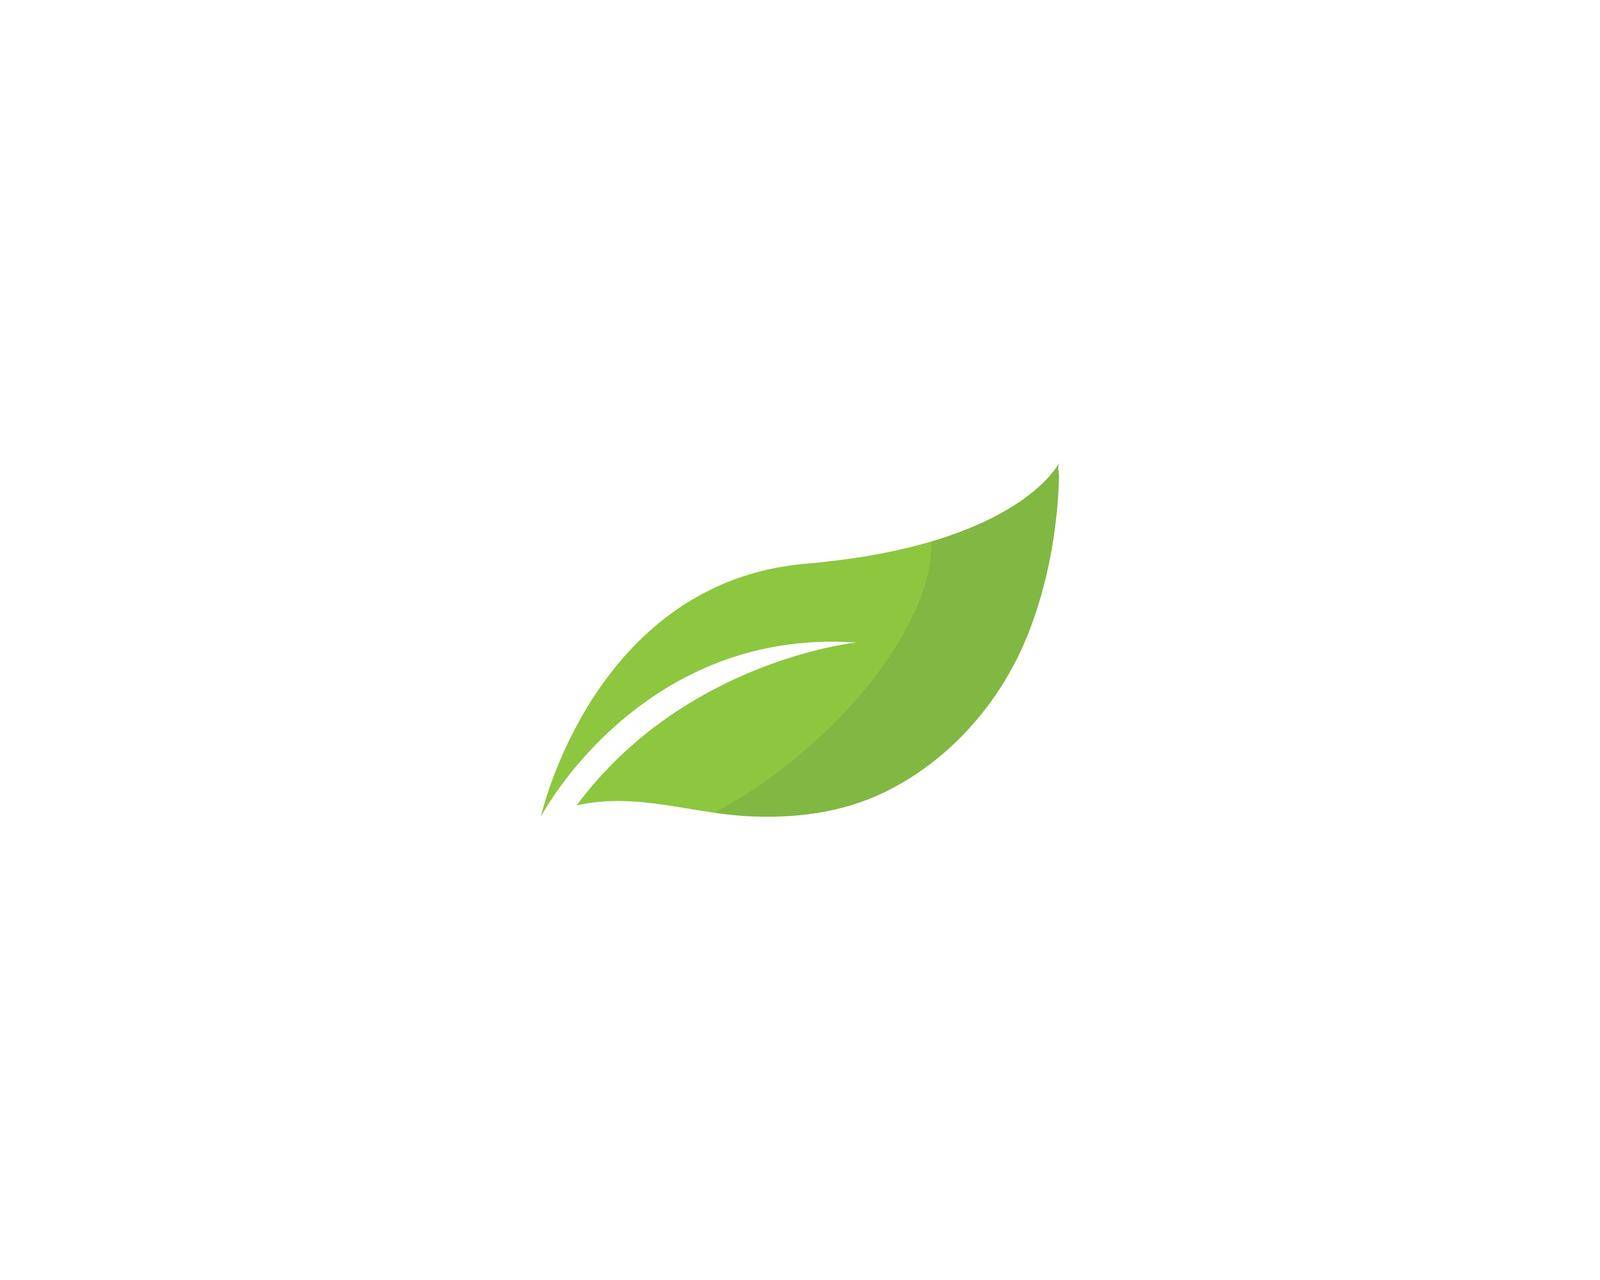 Green leaf logo by awk